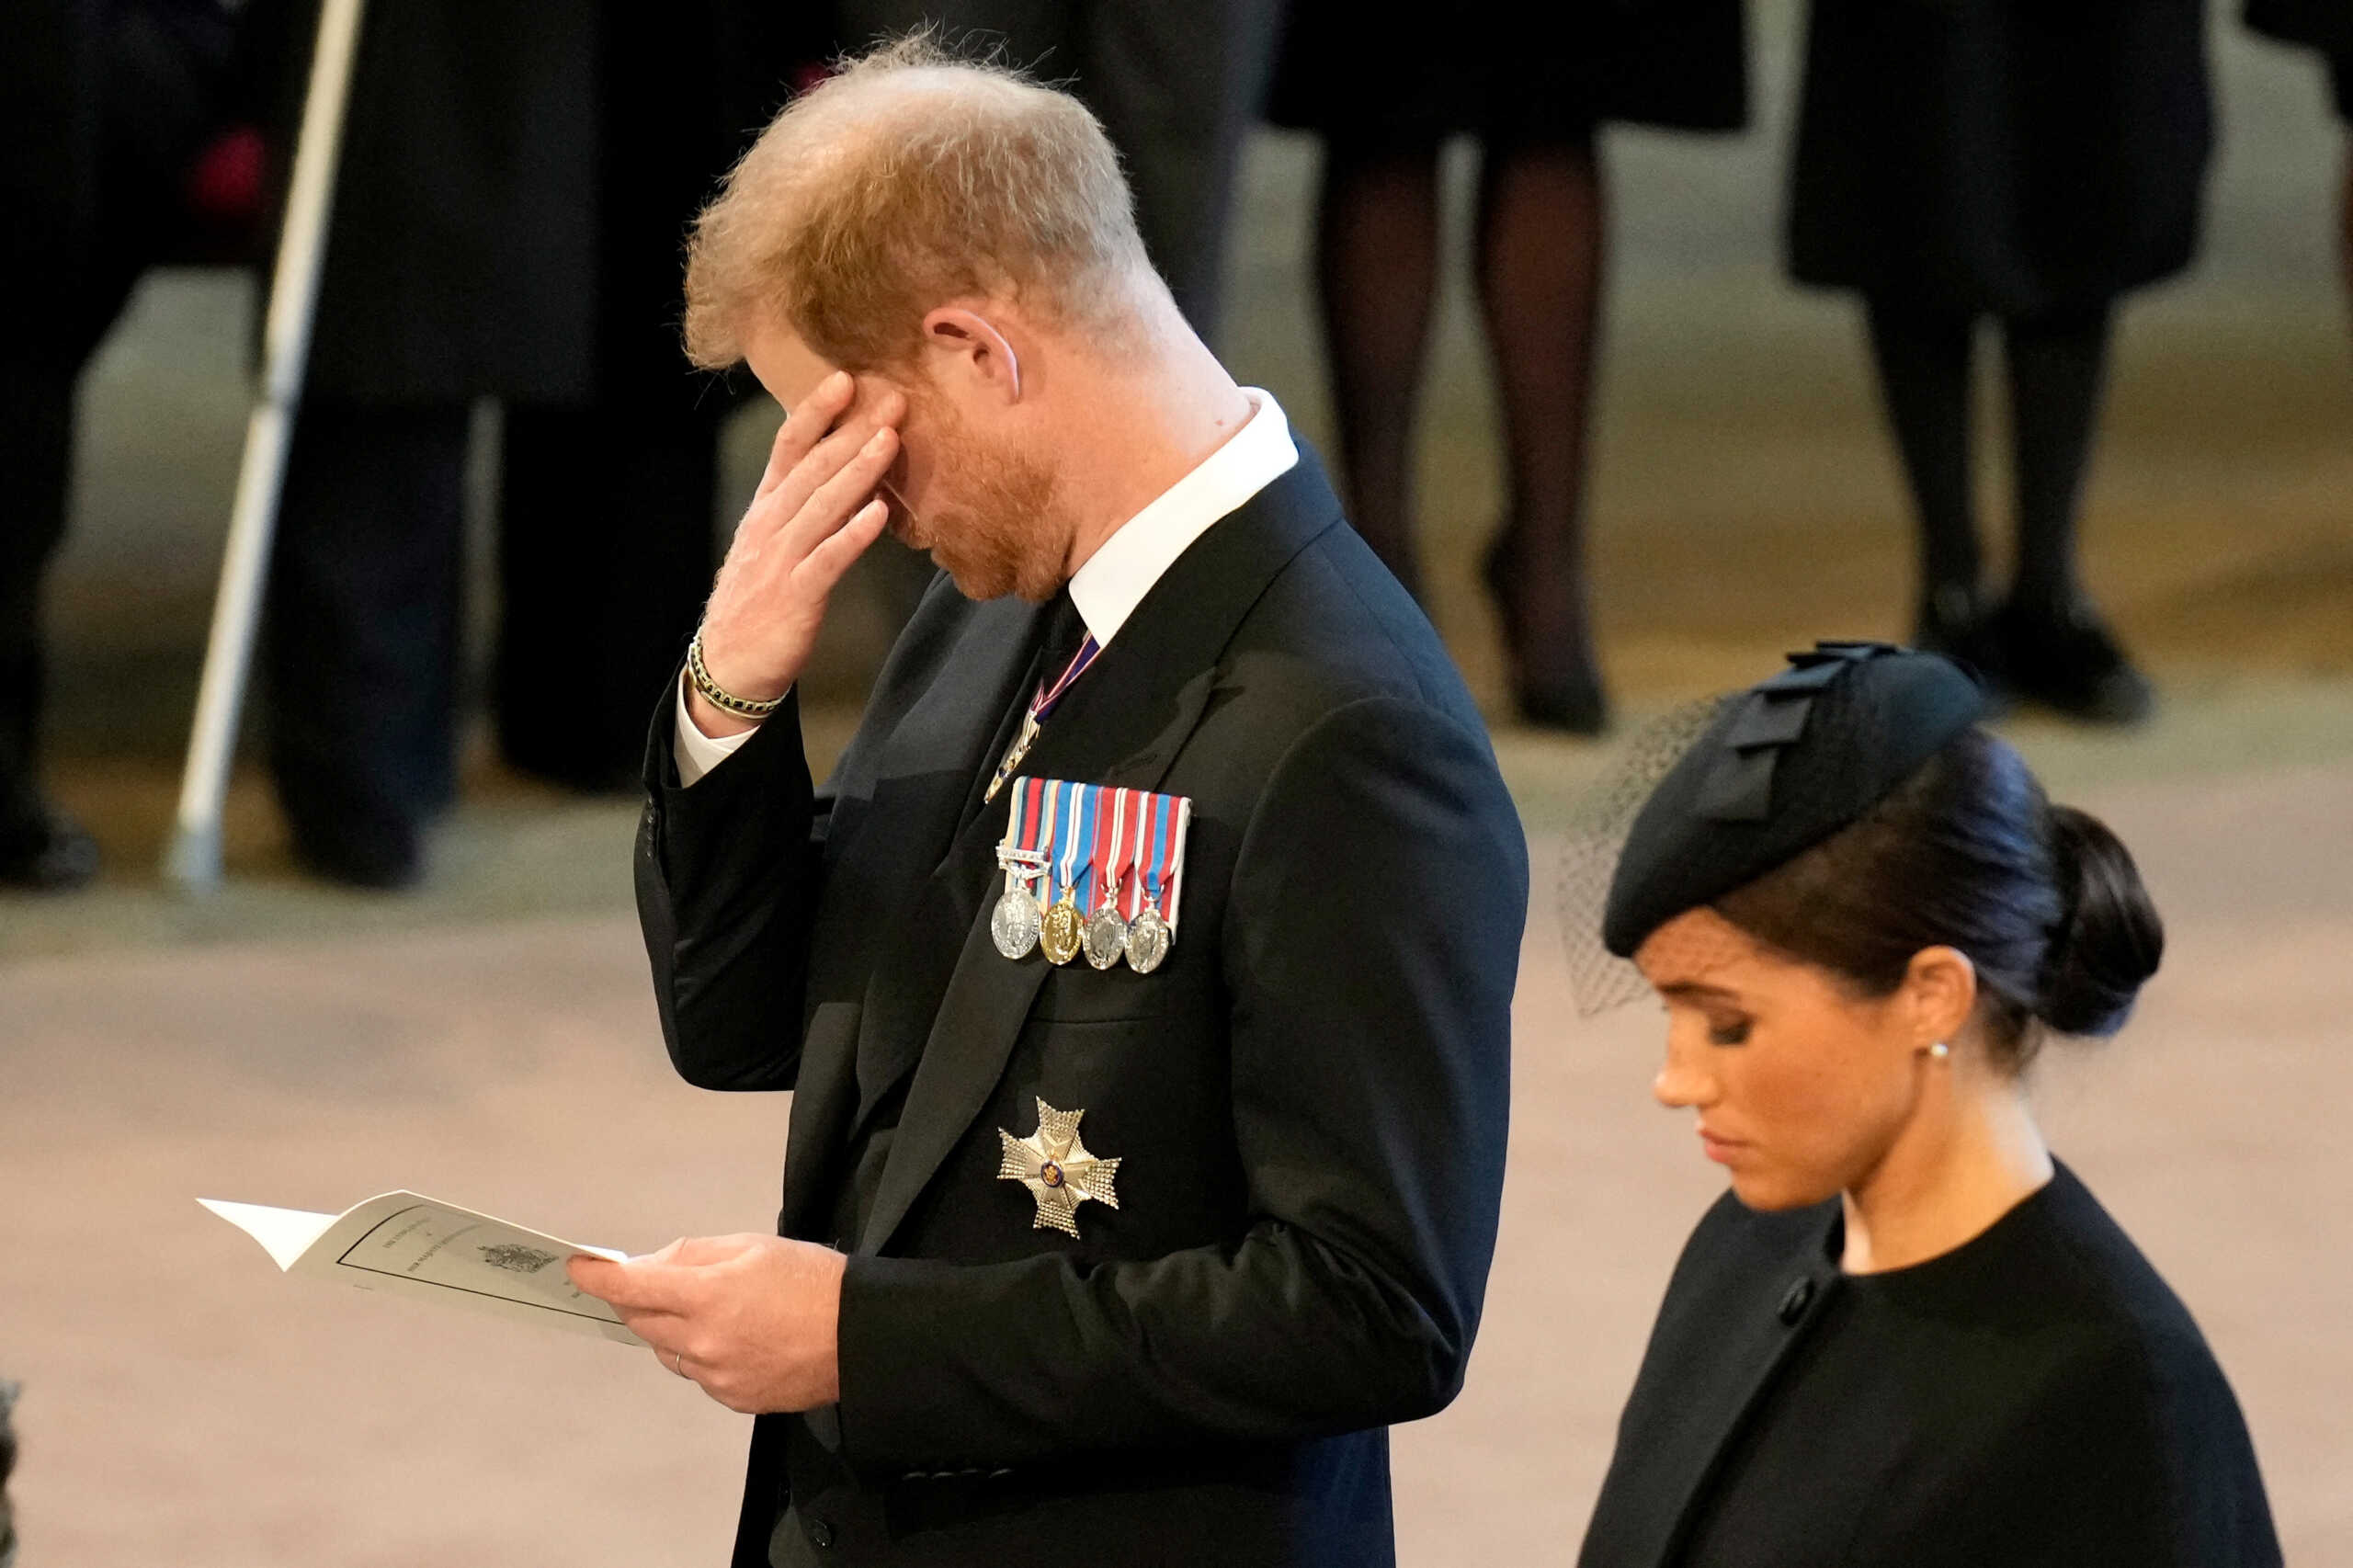 Ο Κάρολος απέκλεισε τον πρίγκιπα Χάρι και την Μέγκαν Μαρκλ από εκδήλωση για την κηδεία της βασίλισσας Ελισάβετ